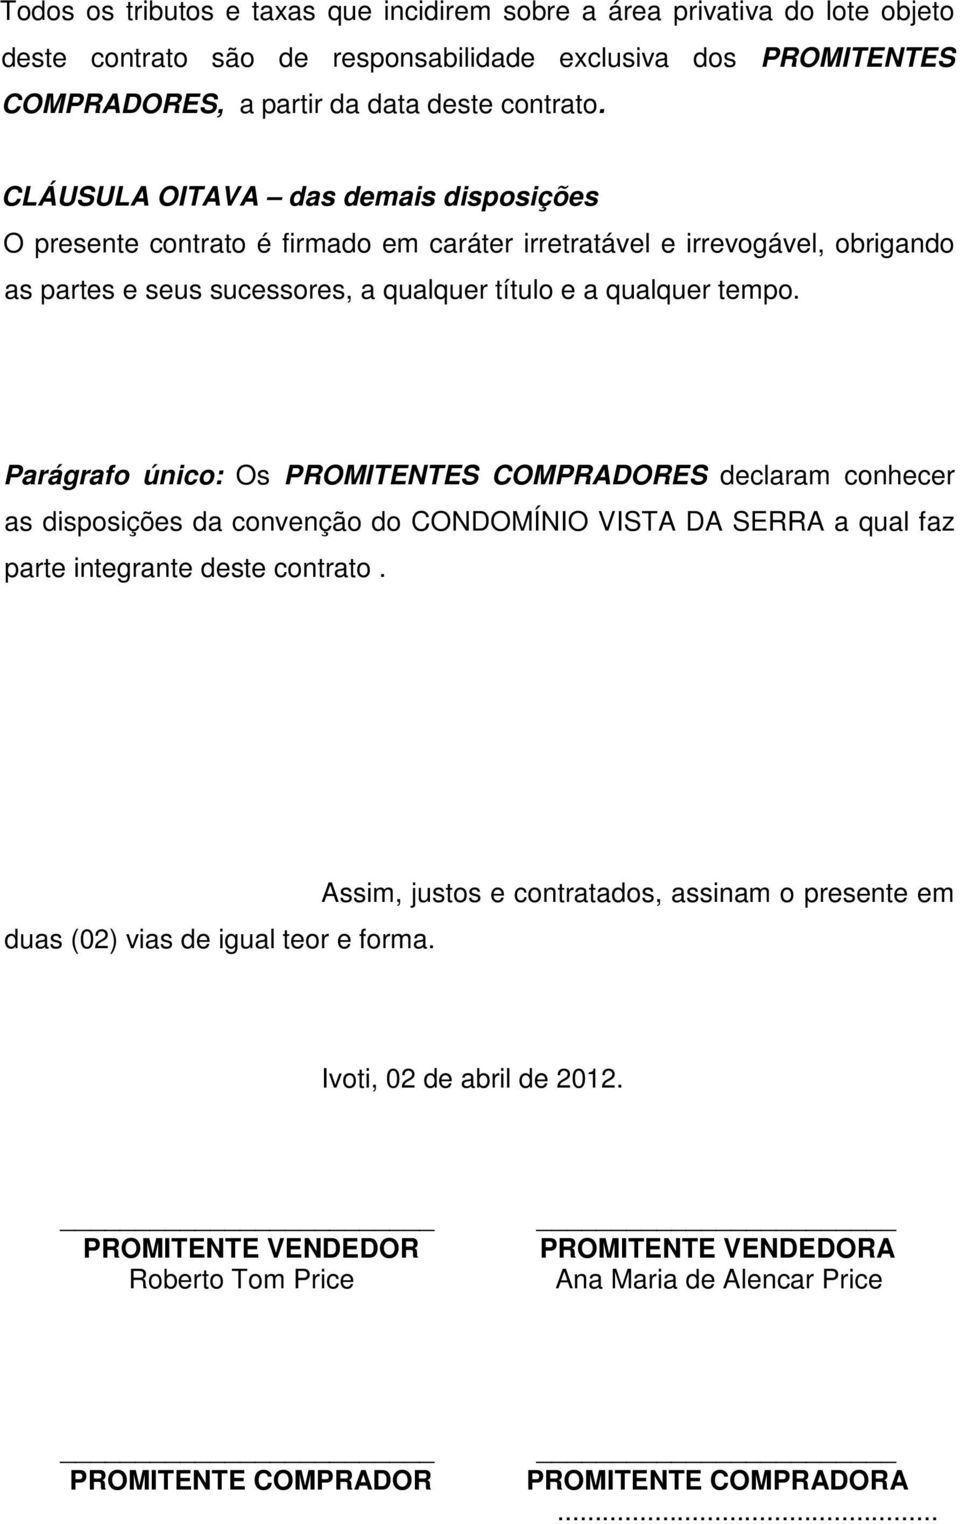 Parágrafo único: Os PROMITENTES COMPRADORES declaram conhecer as disposições da convenção do CONDOMÍNIO VISTA DA SERRA a qual faz parte integrante deste contrato.